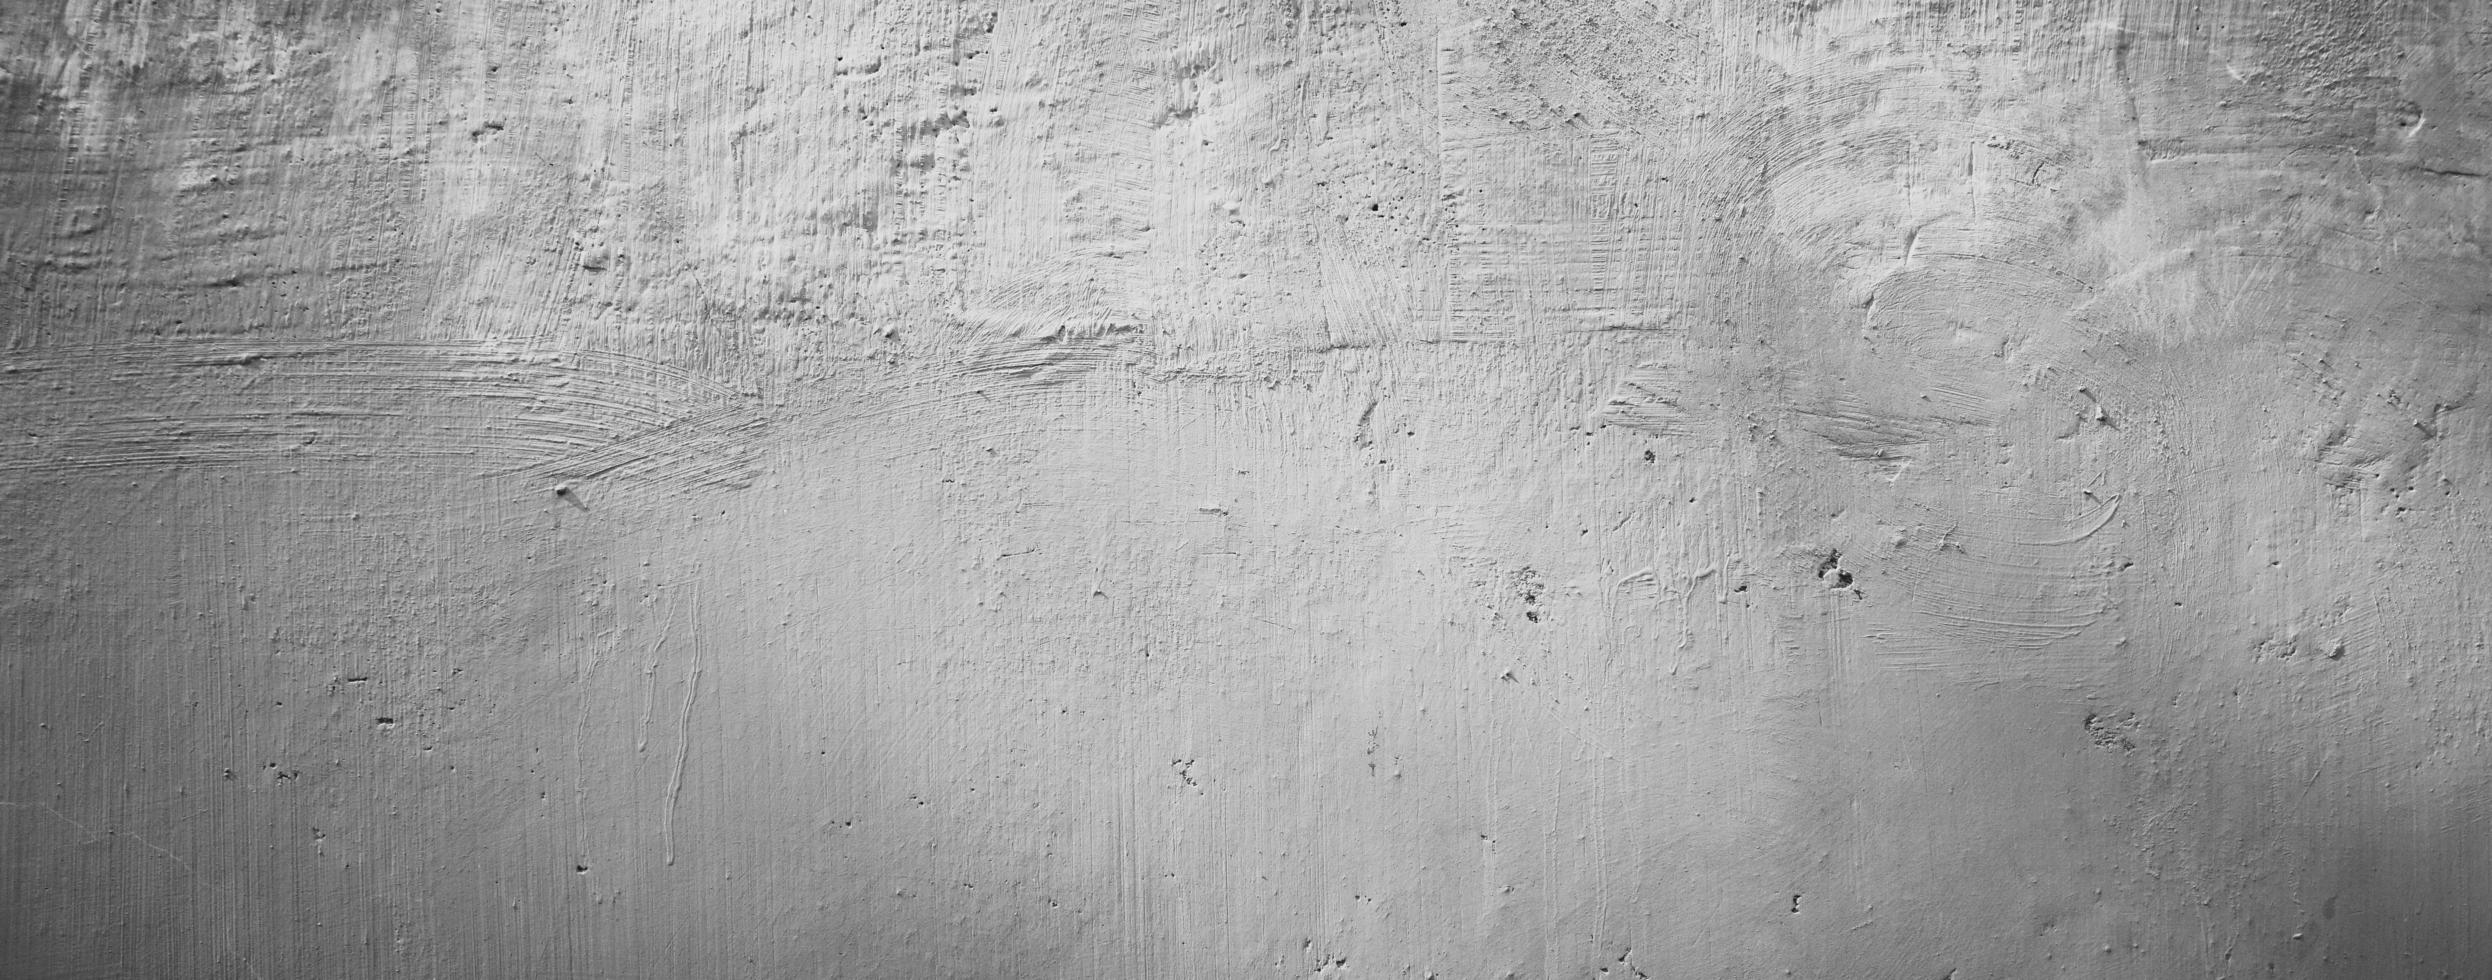 abstrakter weißer Wandbeschaffenheitshintergrund foto